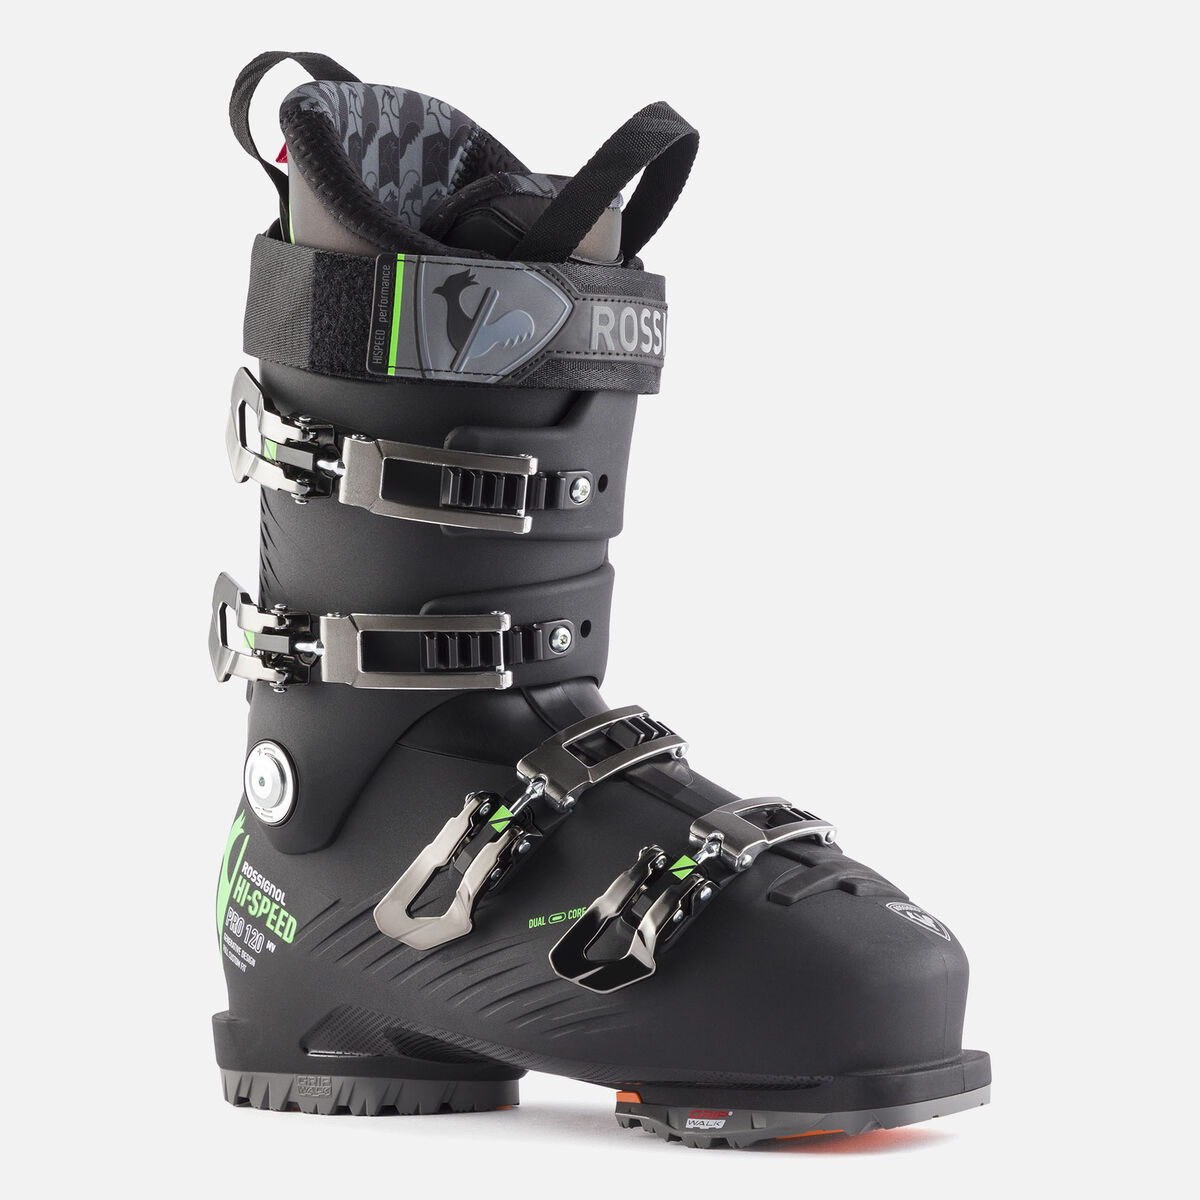 Sac chaussures de ski sur-mesure personnalisé